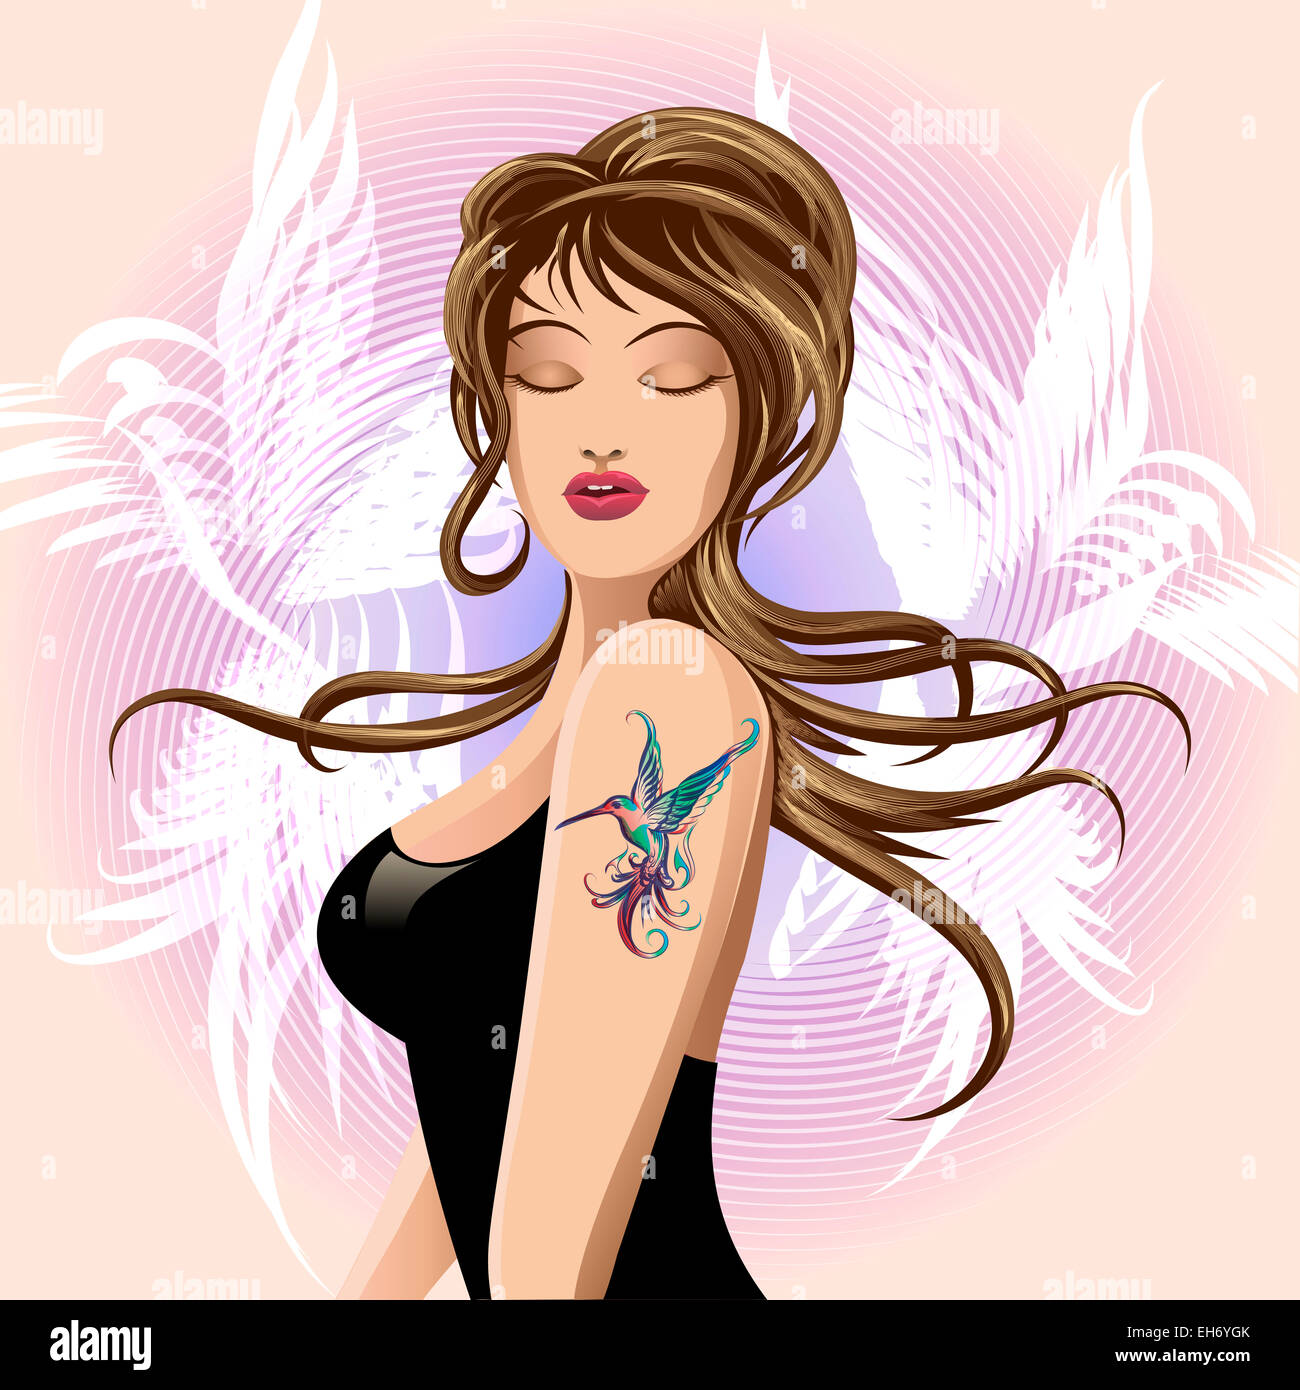 La muchacha con el colibrí el tatuaje en su hombro Foto de stock